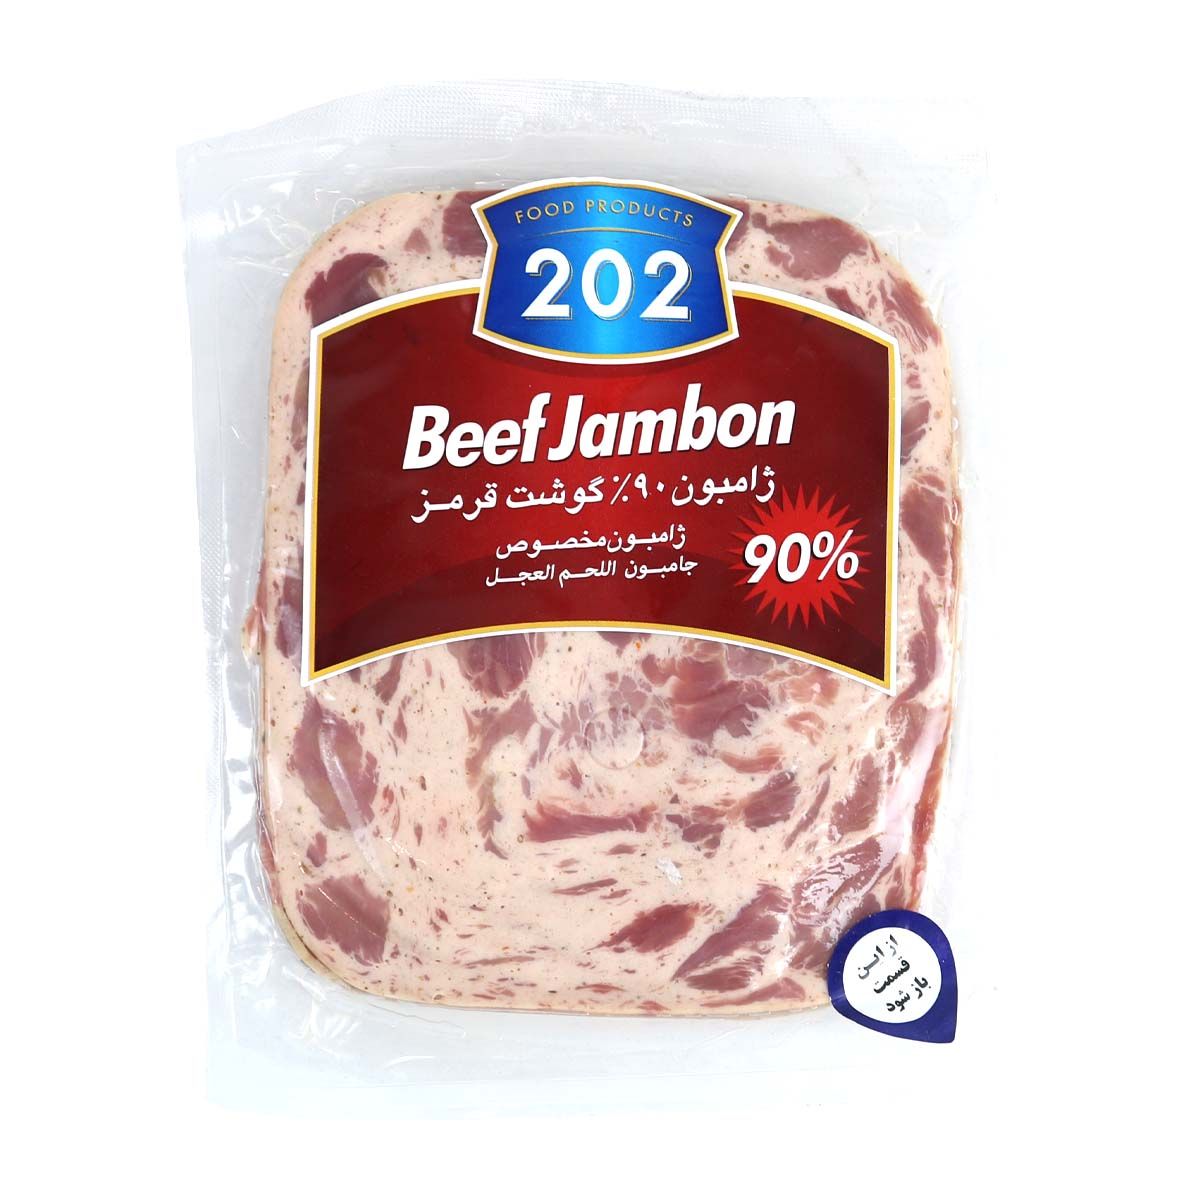 ژامبون 90% گوشت قرمز برند 202 وزن 300 گرمی